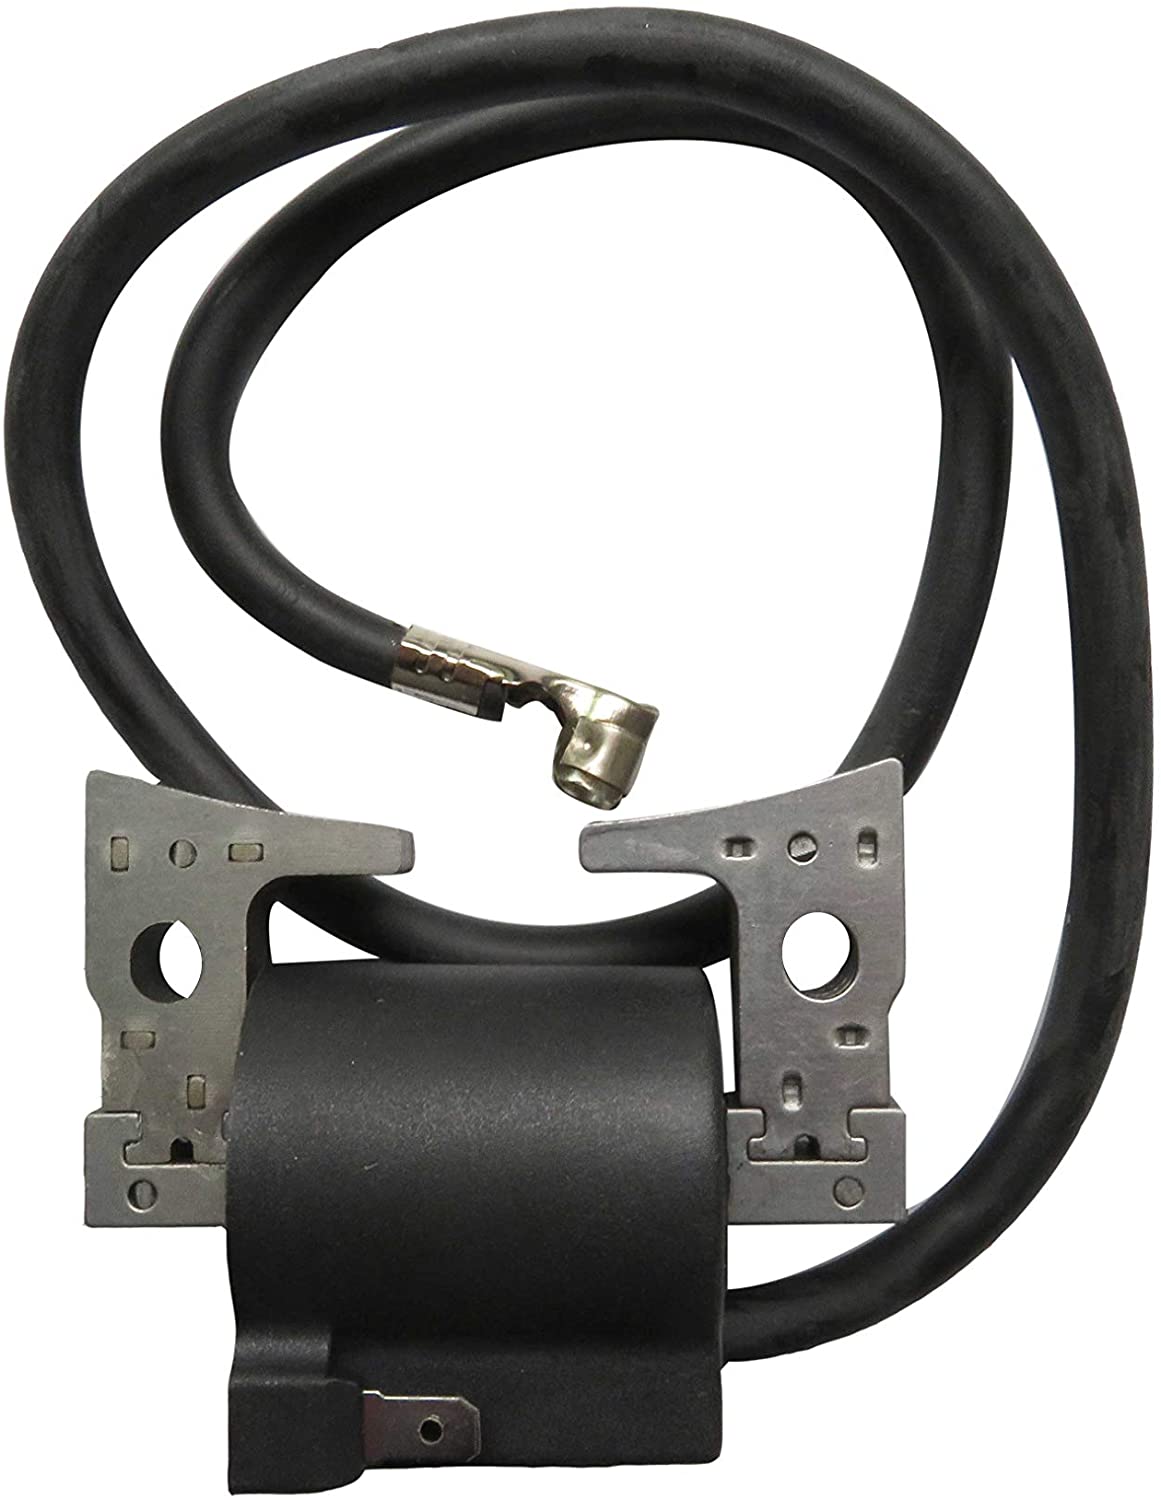 CARBEX Ignition Coil Repl.# JN-85640-01-00 for Golf Cart Yamaha EPIGC106